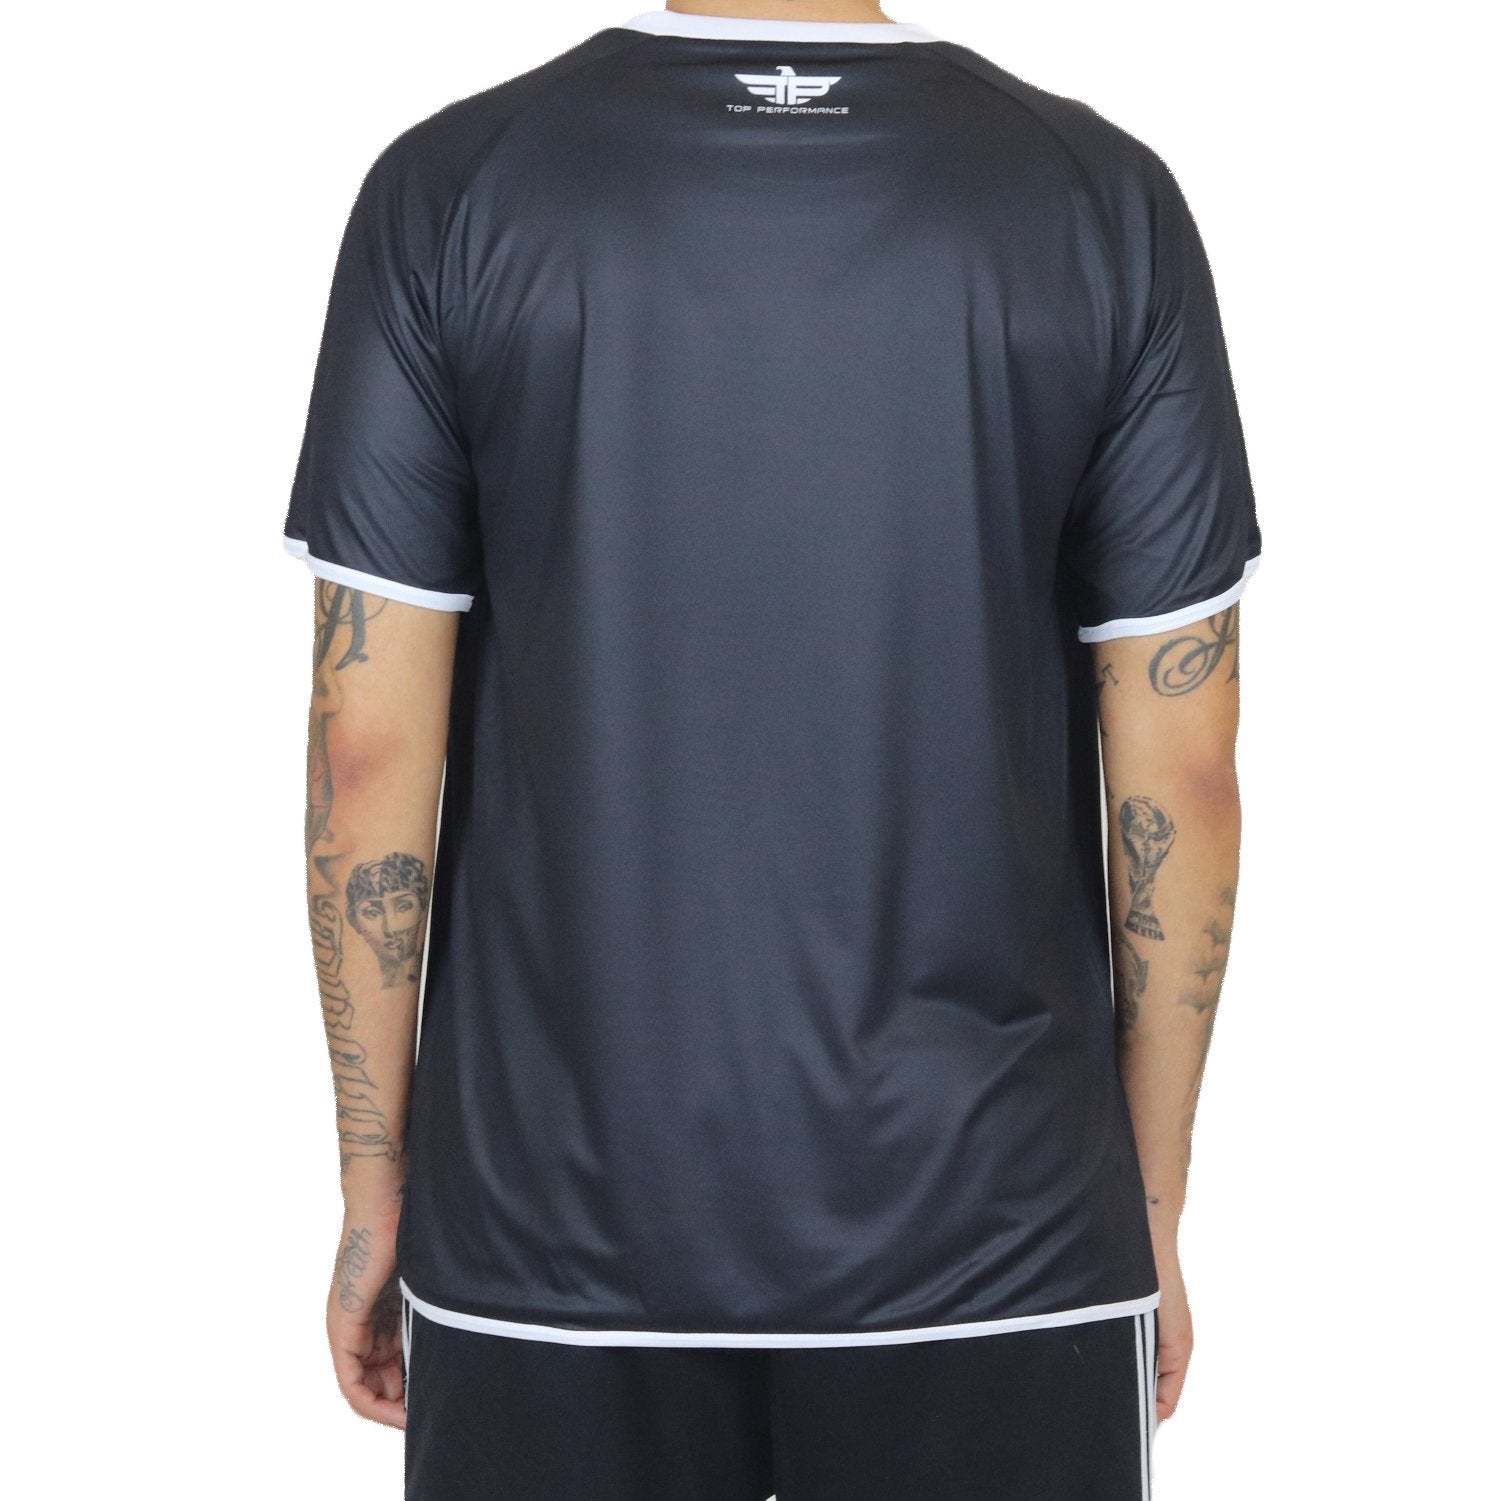 Camiseta de fútbol reversible de alto rendimiento (no se requiere pedido mínimo)